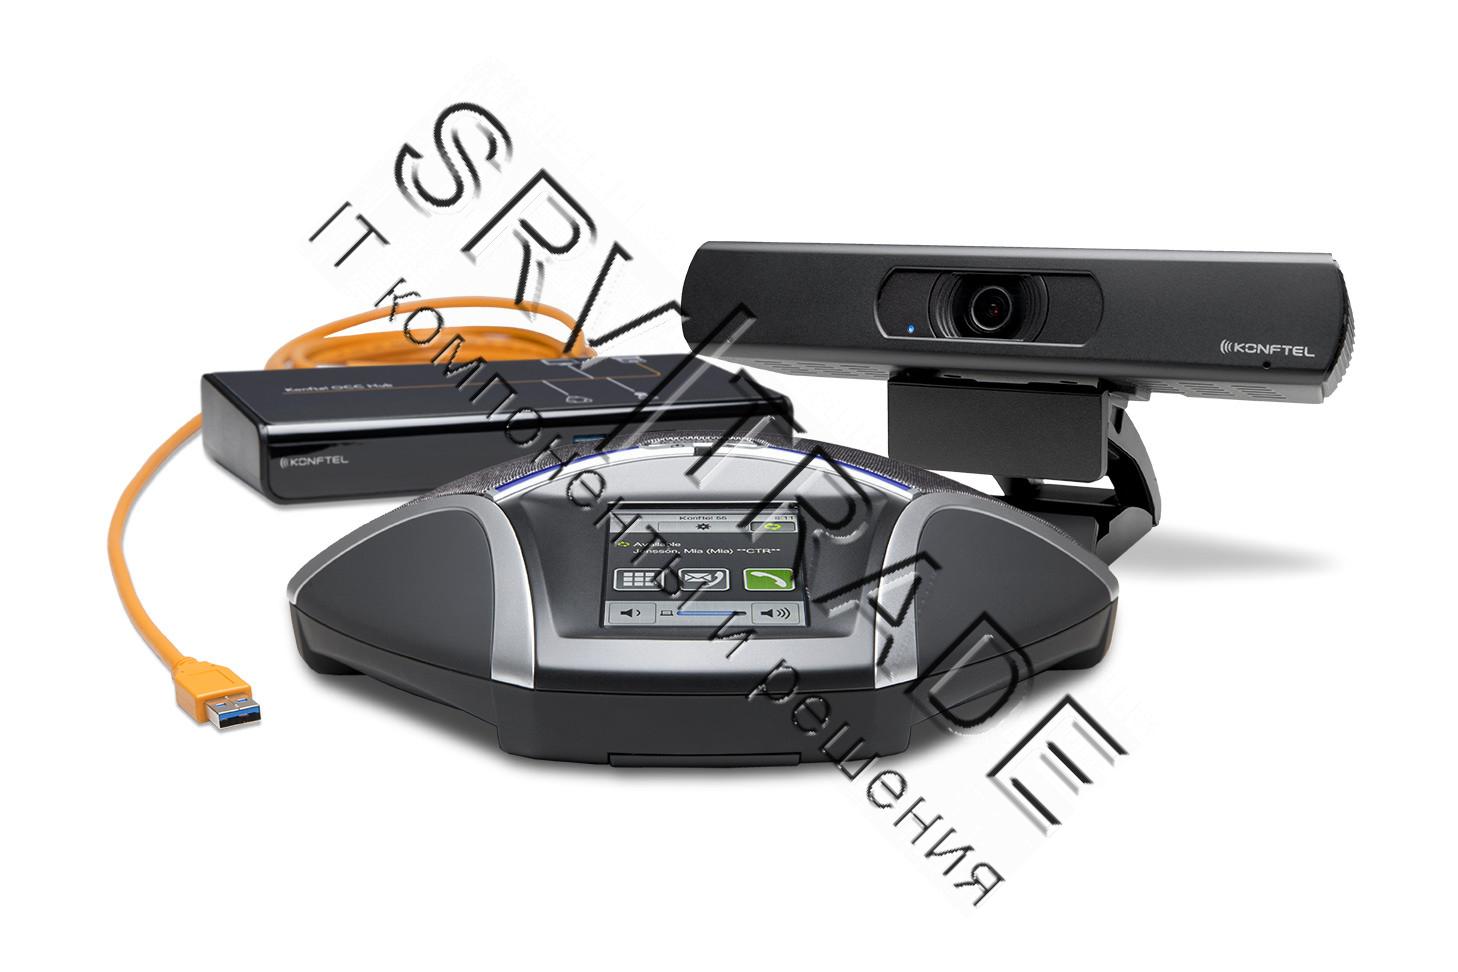 Комплект для видеоконференцсвязи Konftel C50300Mx (300Mx + Cam50 + HUB), Konftel KT-C50300Mx